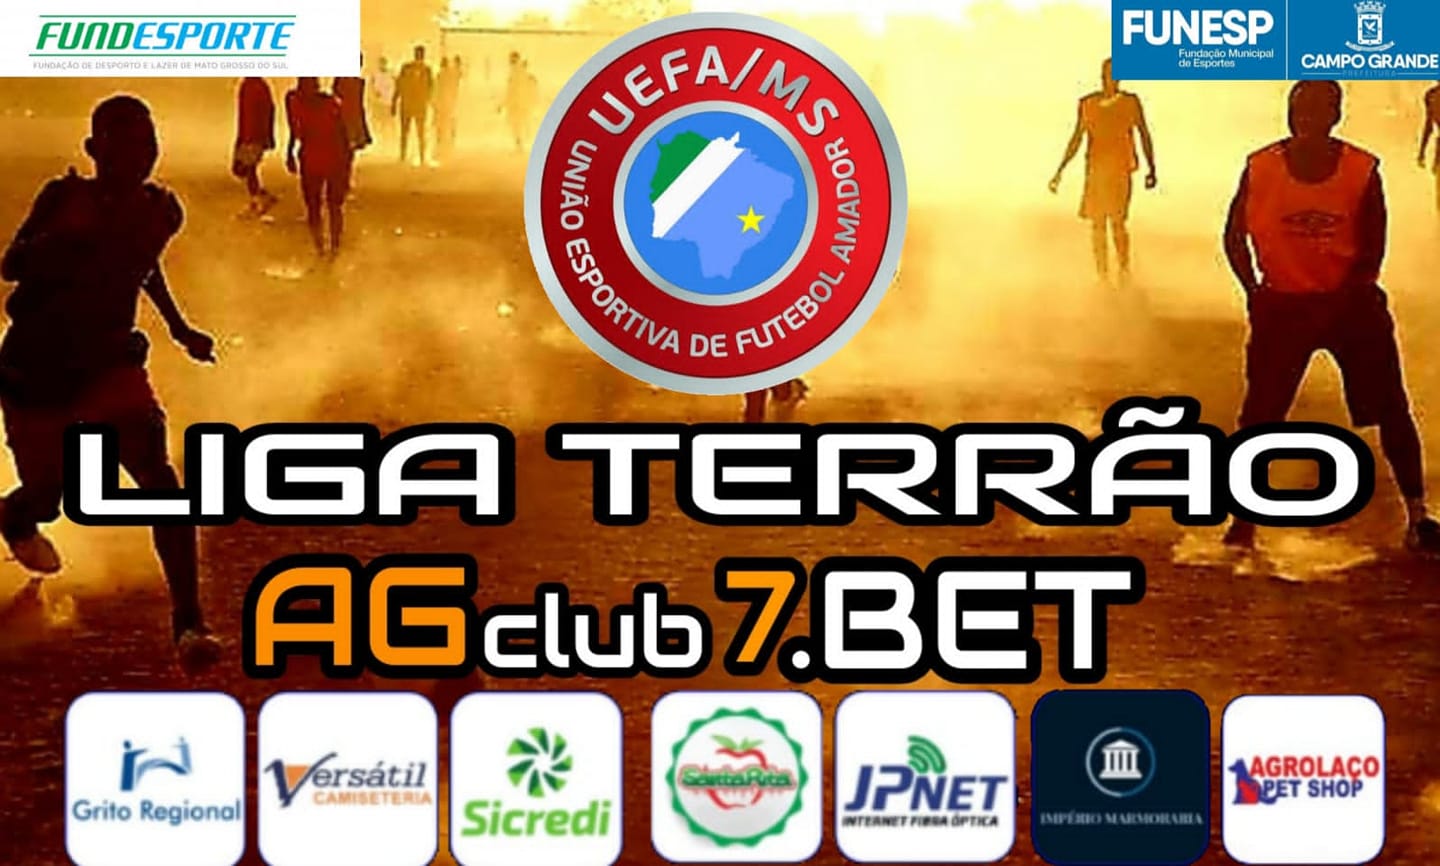 Conheça a AGClub7.BET a patrocinadora do Campeonato da Liga Terrão,  promovida pela UEFA-MS - Grito Regional